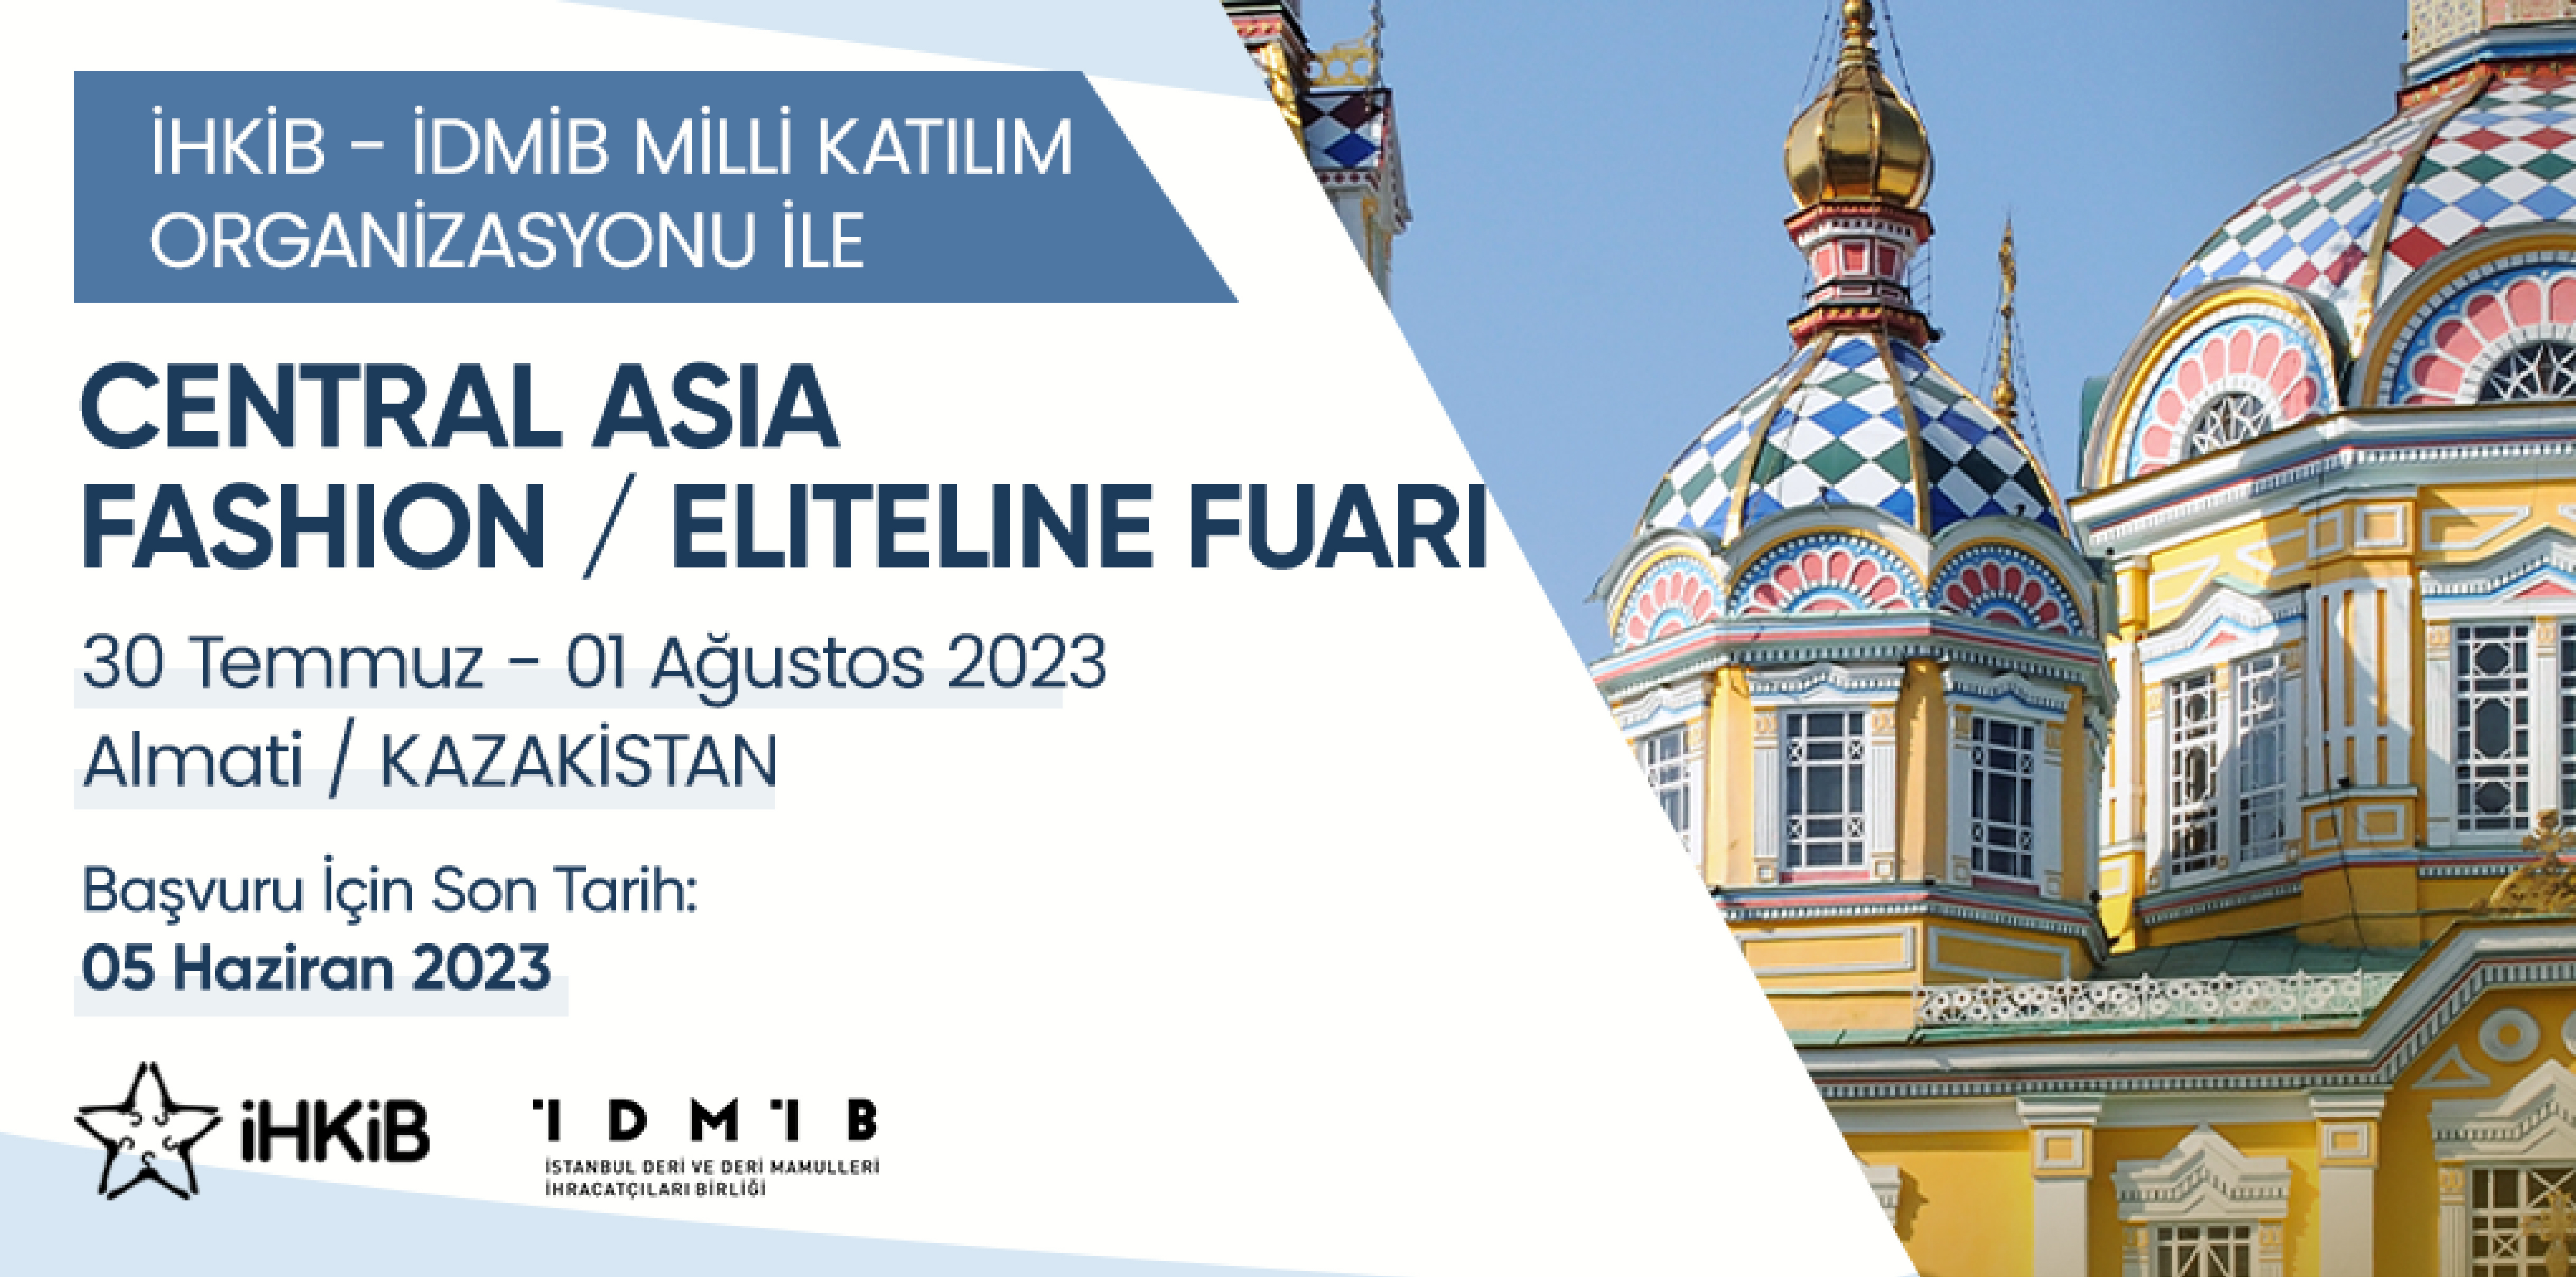 Central Asia Fashion / Elite Line Fuarı'nda İDMİB ve İHKİB Milli Katılım Organizasyonu ile Yer Almak İçin Hemen Başvurun!